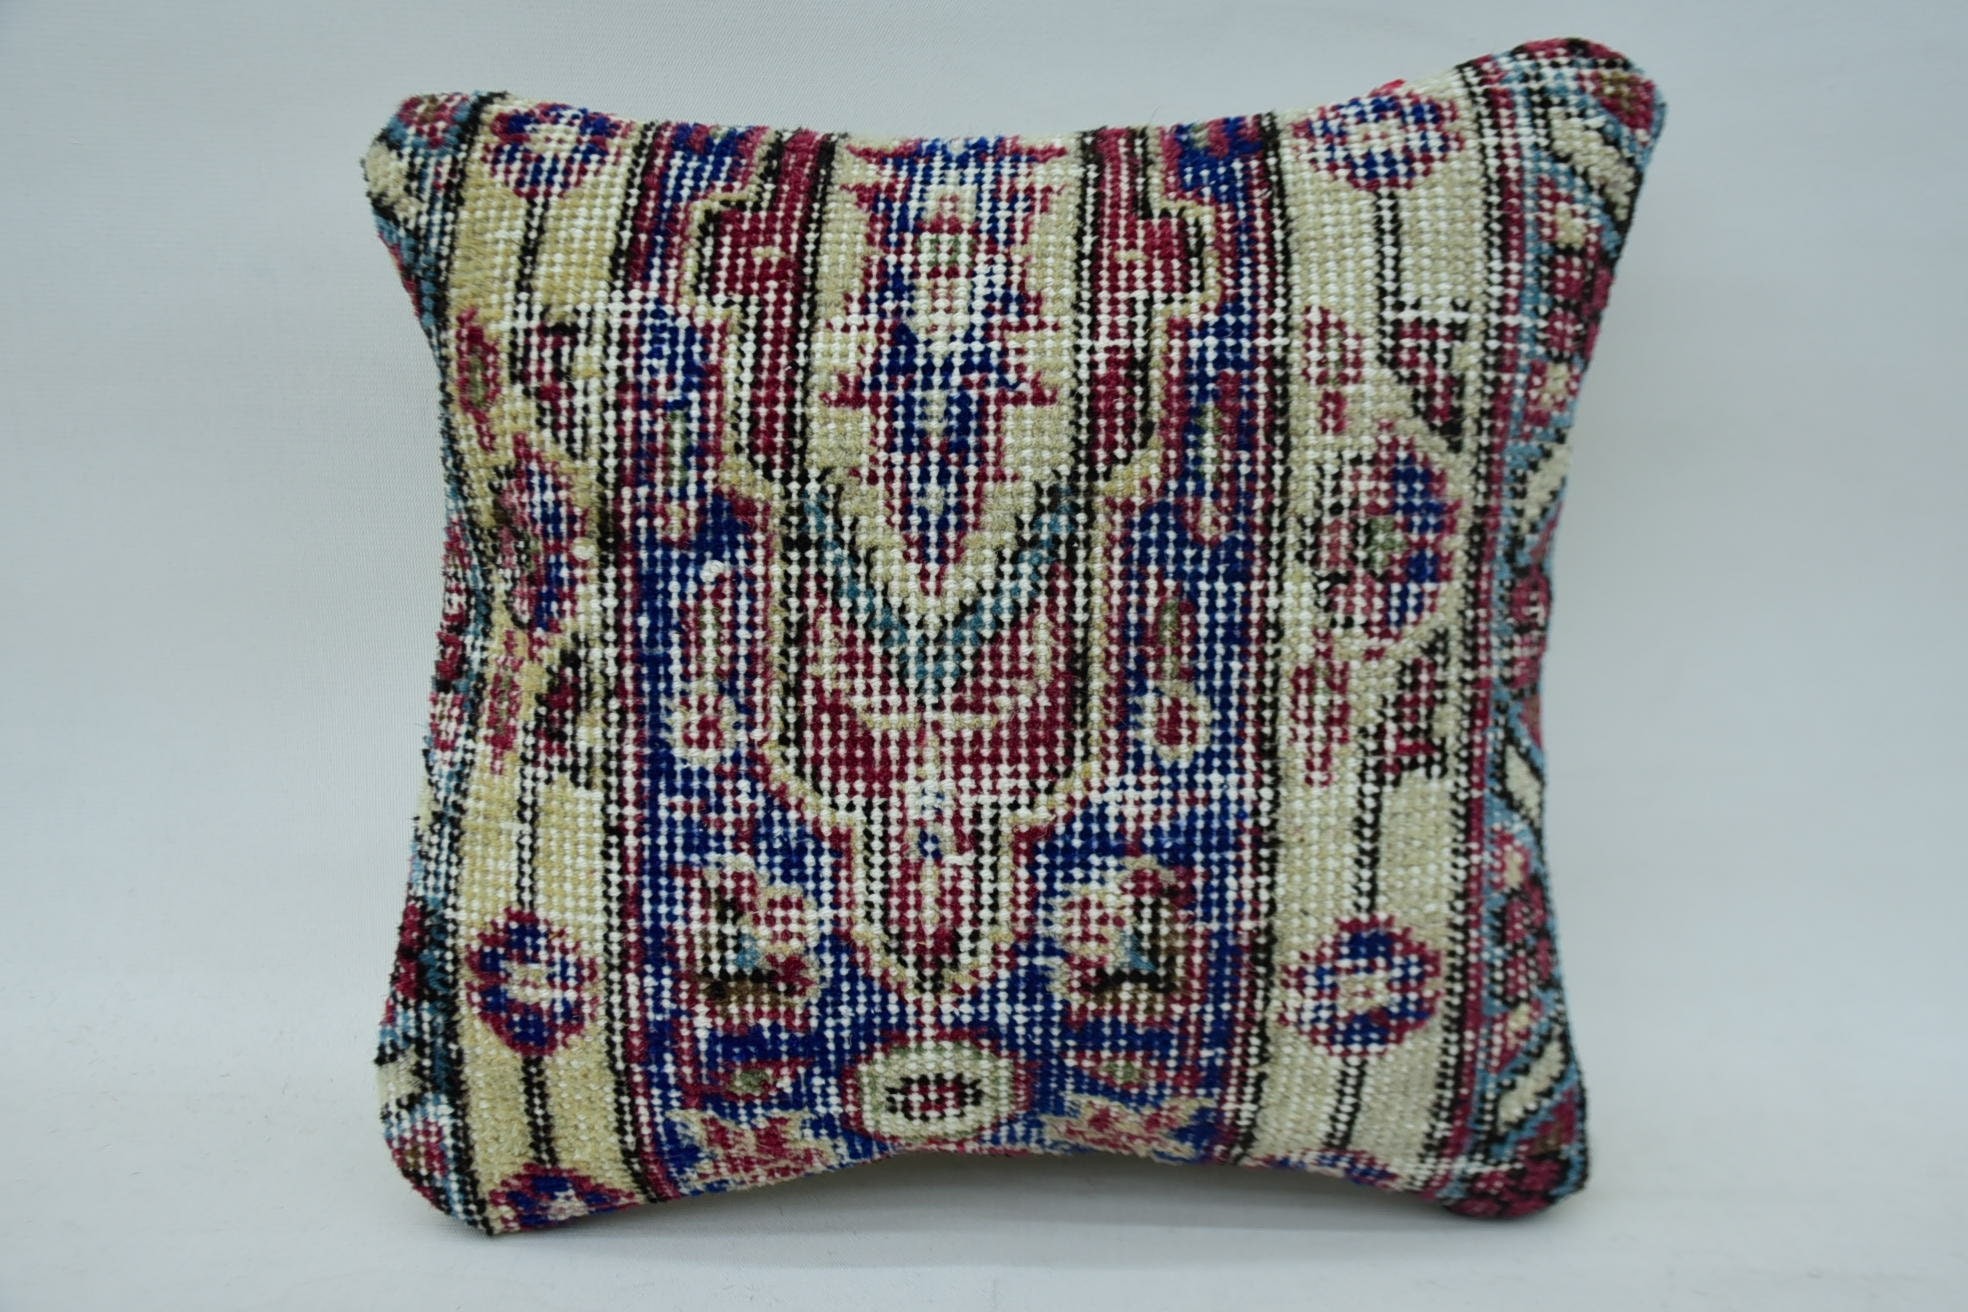 12"x12" Blue Cushion Cover, Pillow for Sofa, Decorative Throw Pillow Sham, Antique Pillows, Gift Pillow, Nautical Throw Cushion